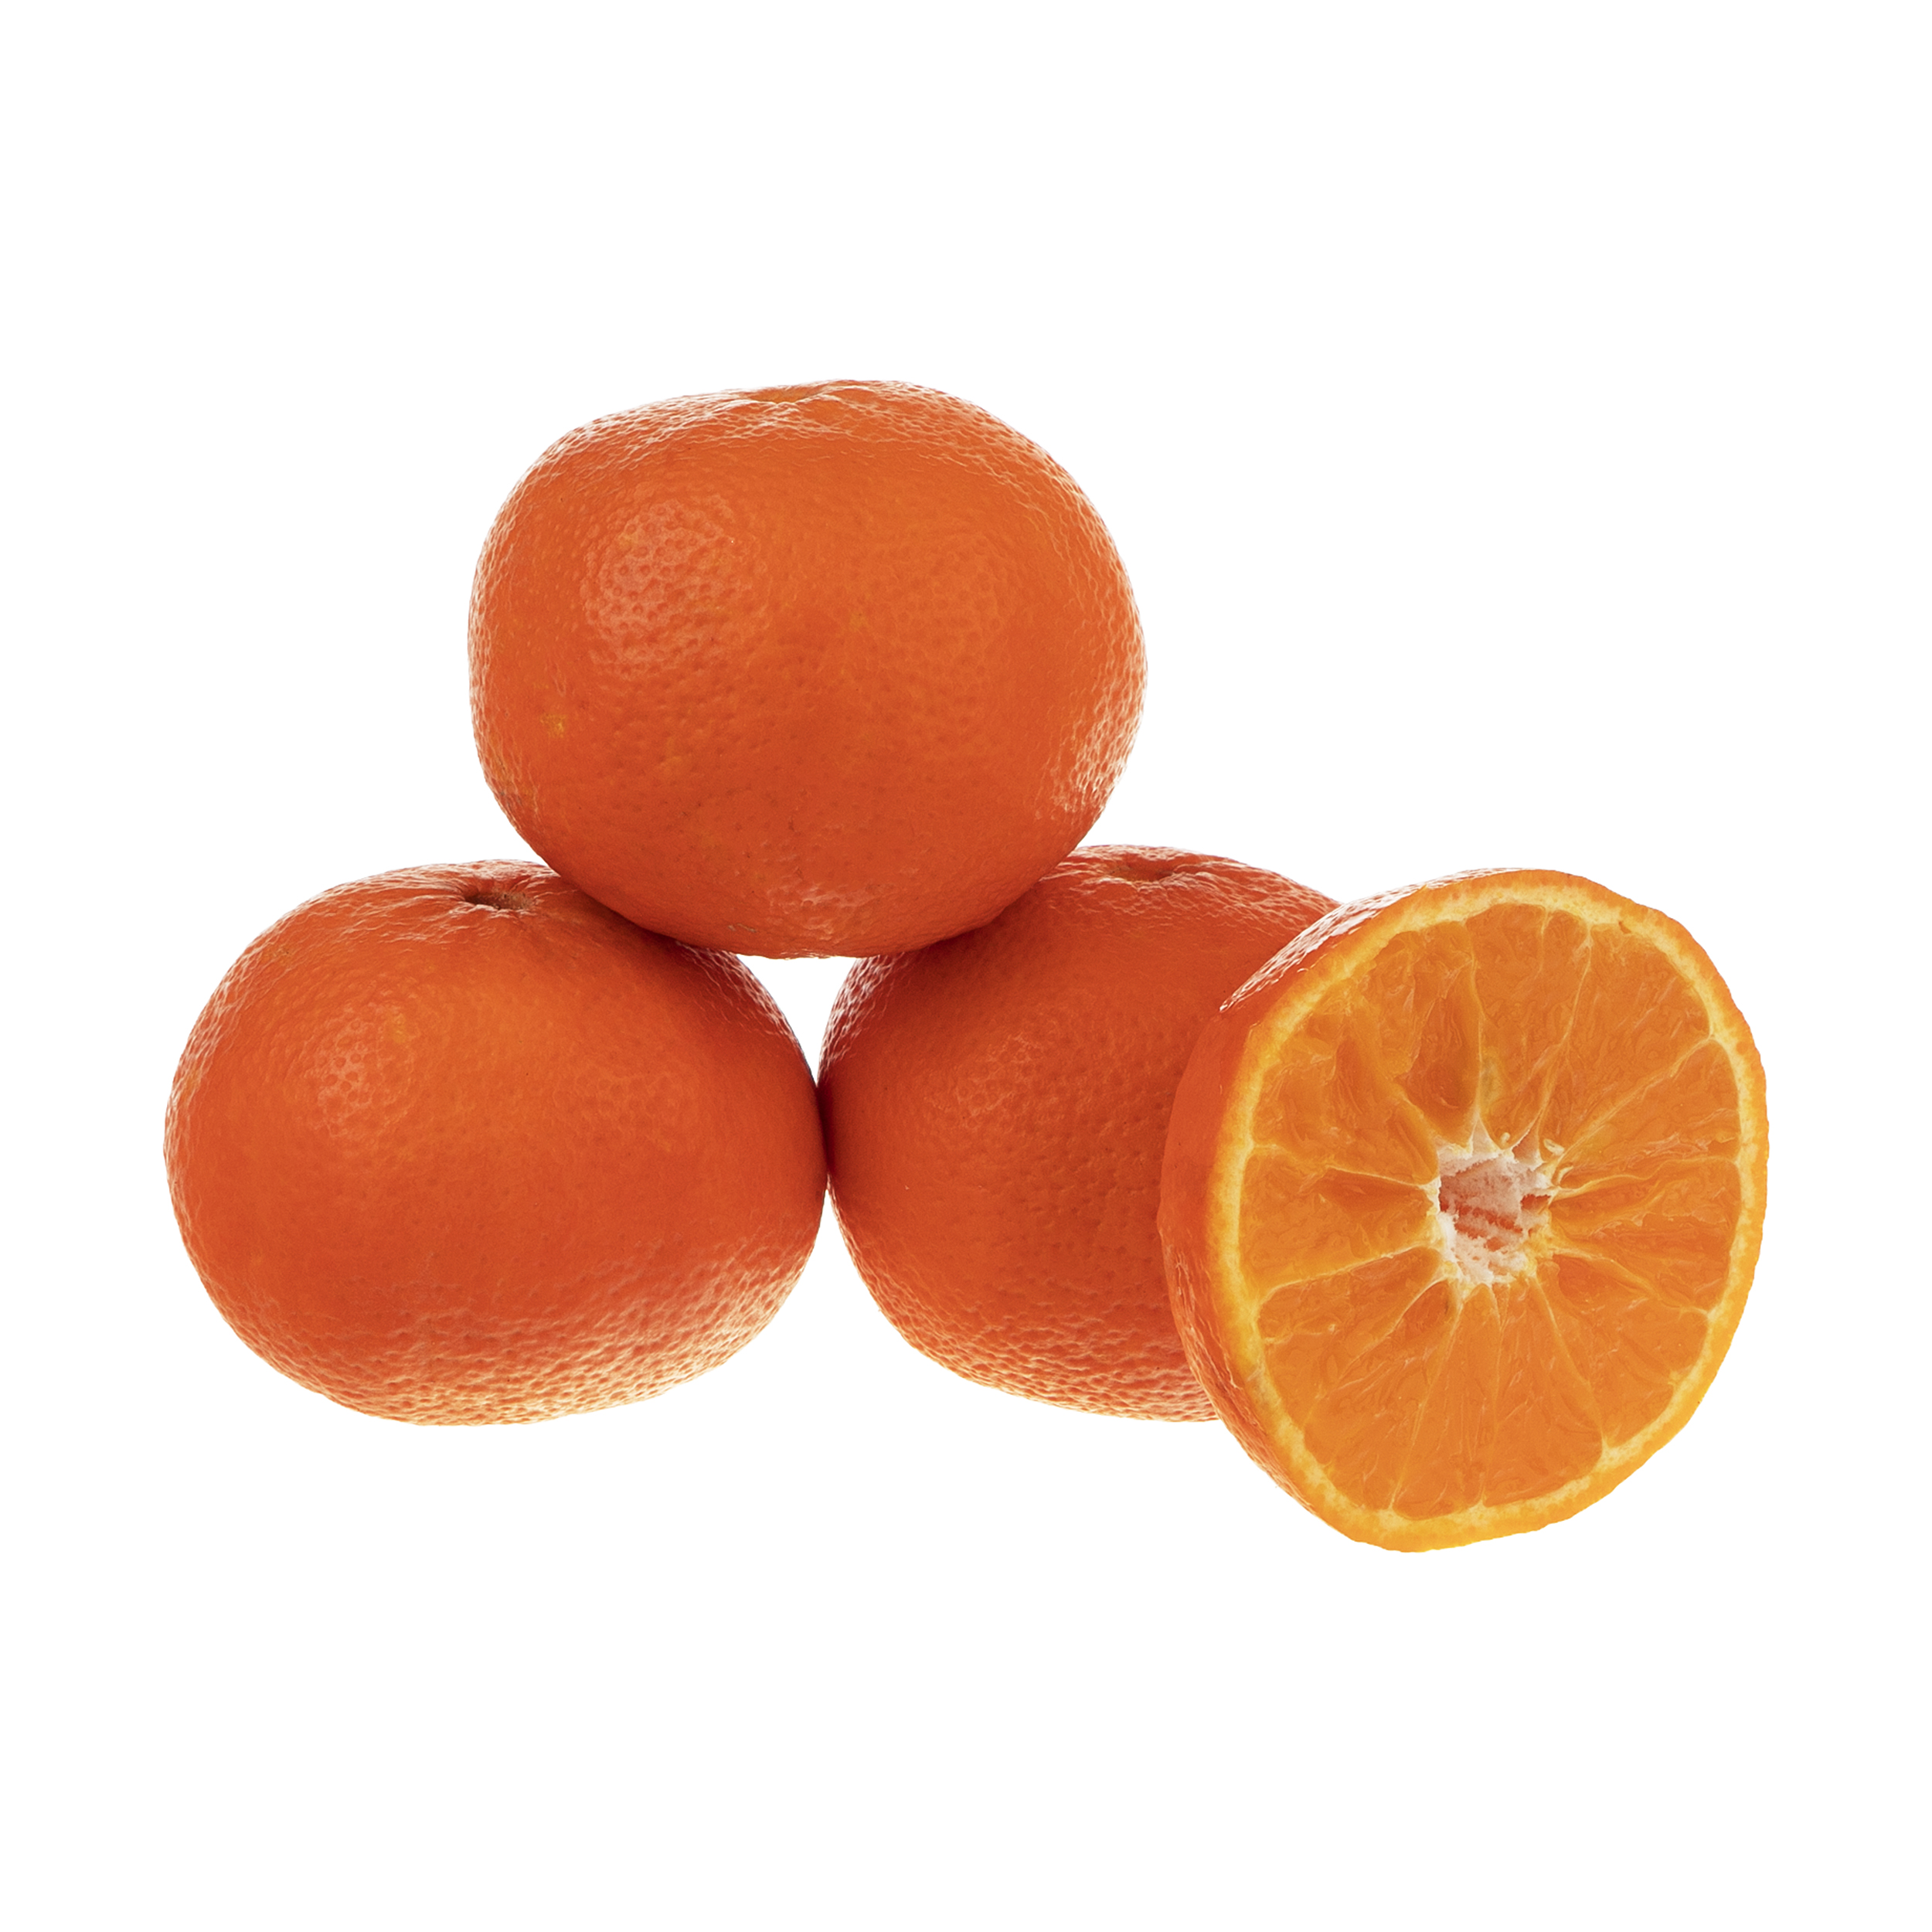 نارنگی هودکا - 1 کیلوگرم